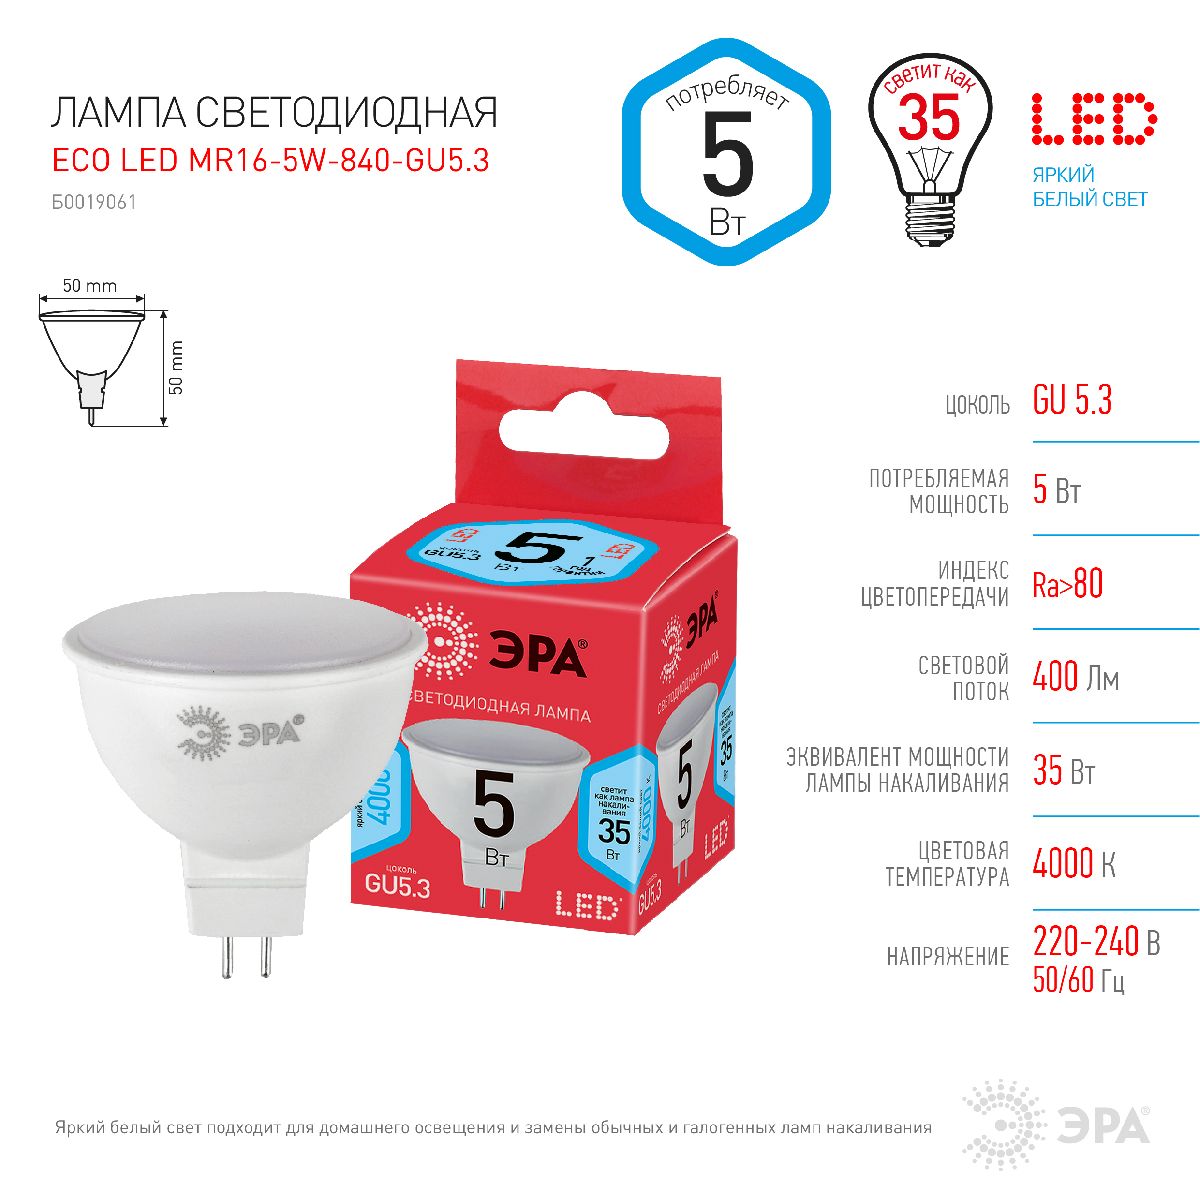 Лампа светодиодная Эра GU5.3 5W 4000K ECO LED MR16-5W-840-GU5.3 Б0019061